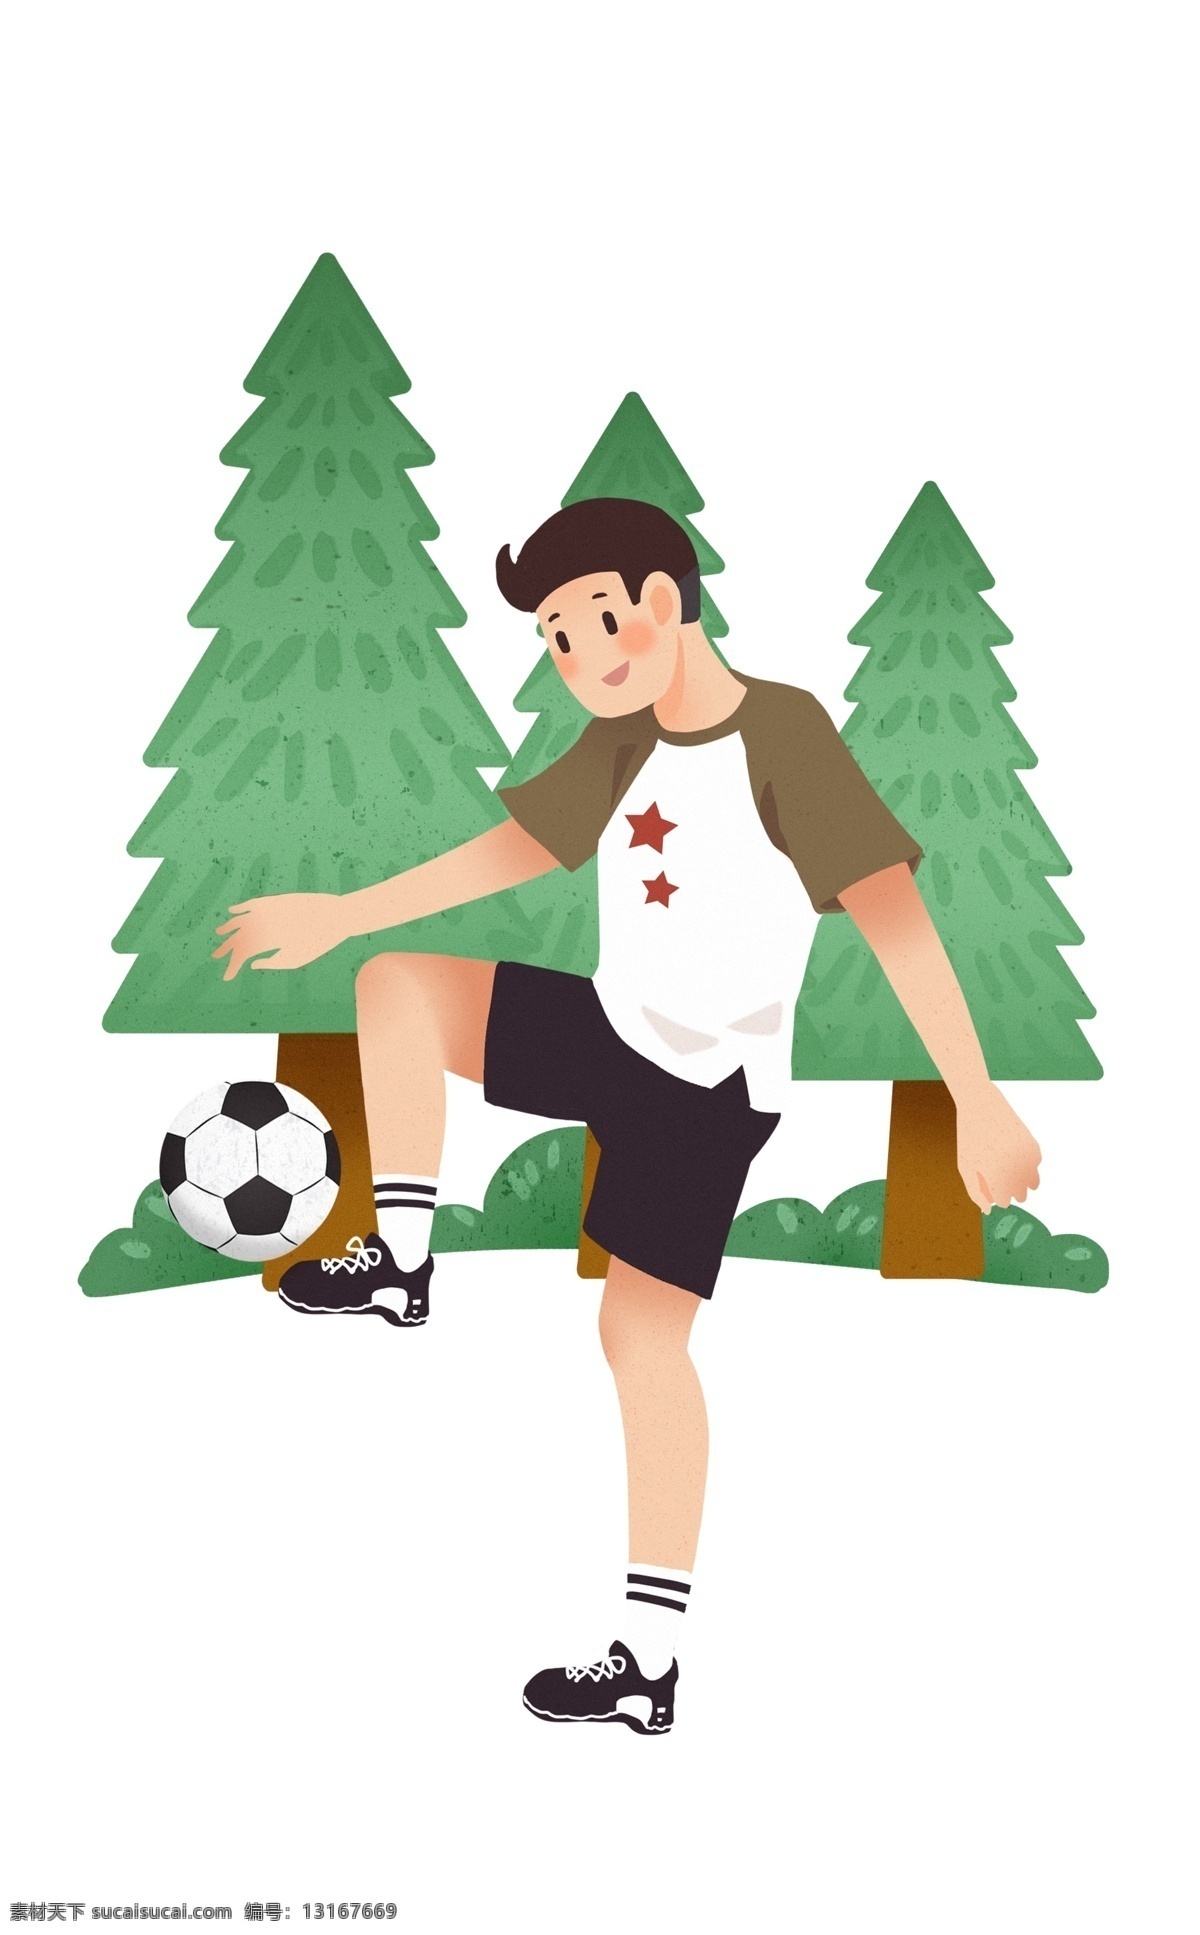 踢 足球 男孩 插画 踢足球的男孩 运动的男孩 健身人物 绿色树木装饰 卡通插画 体育运动 锻炼身体